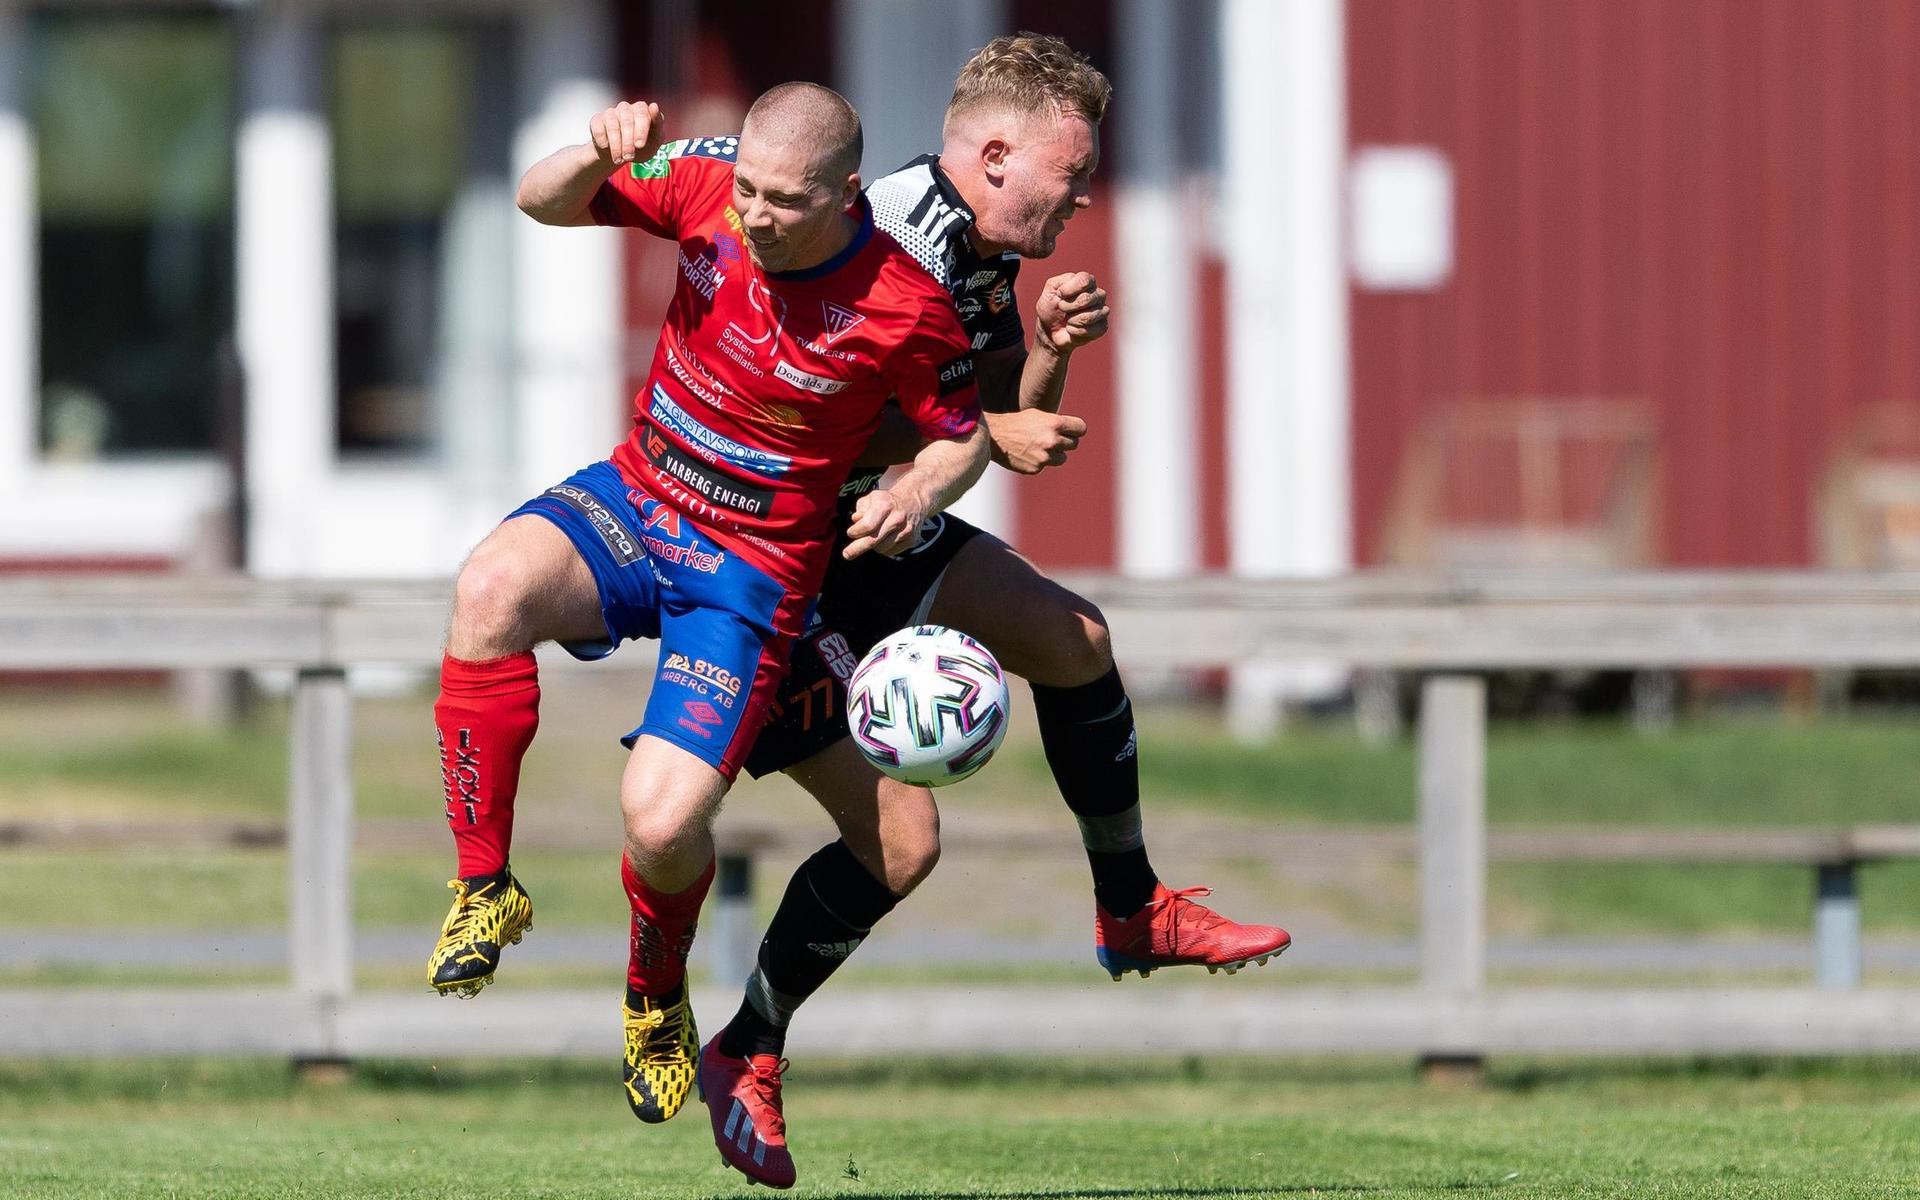 Tvååkers David Struski Persson och Karlskronas Kevin Carlsson under fotbollsmatchen i Division 1 södra 